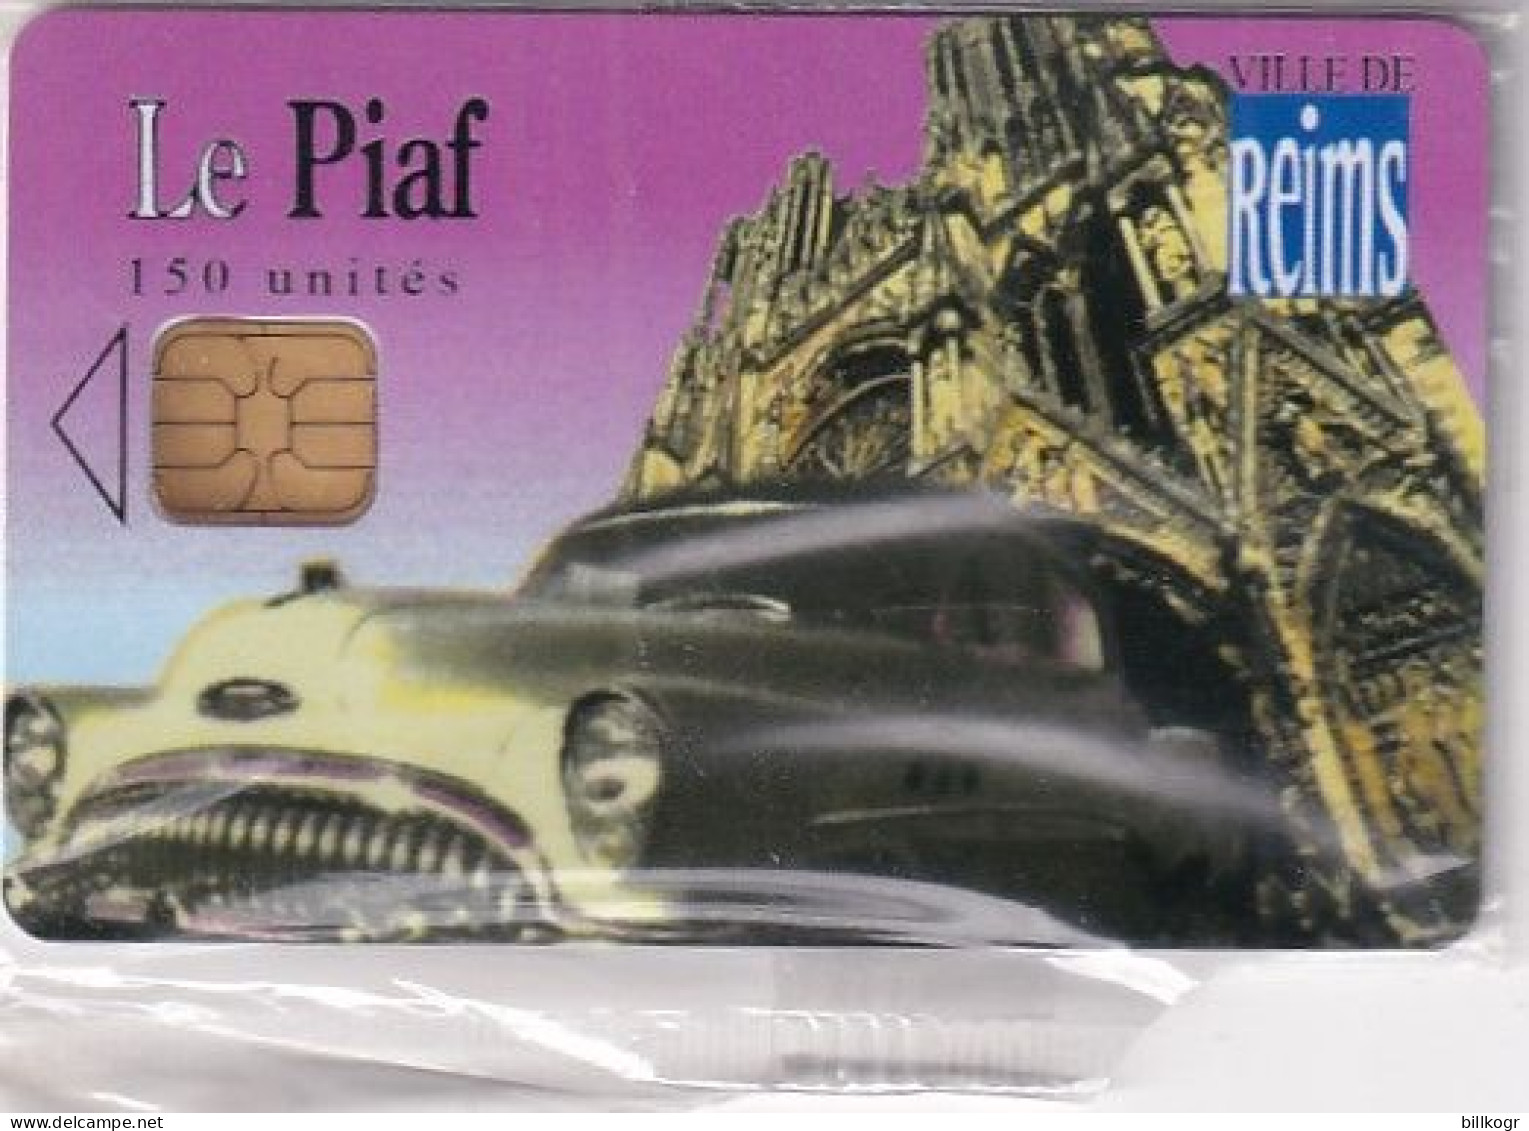 FRANCE - Le Piaf/Ville De Reims 150 Unites, Tirage 2900, 07/06, Mint - Cartes De Stationnement, PIAF